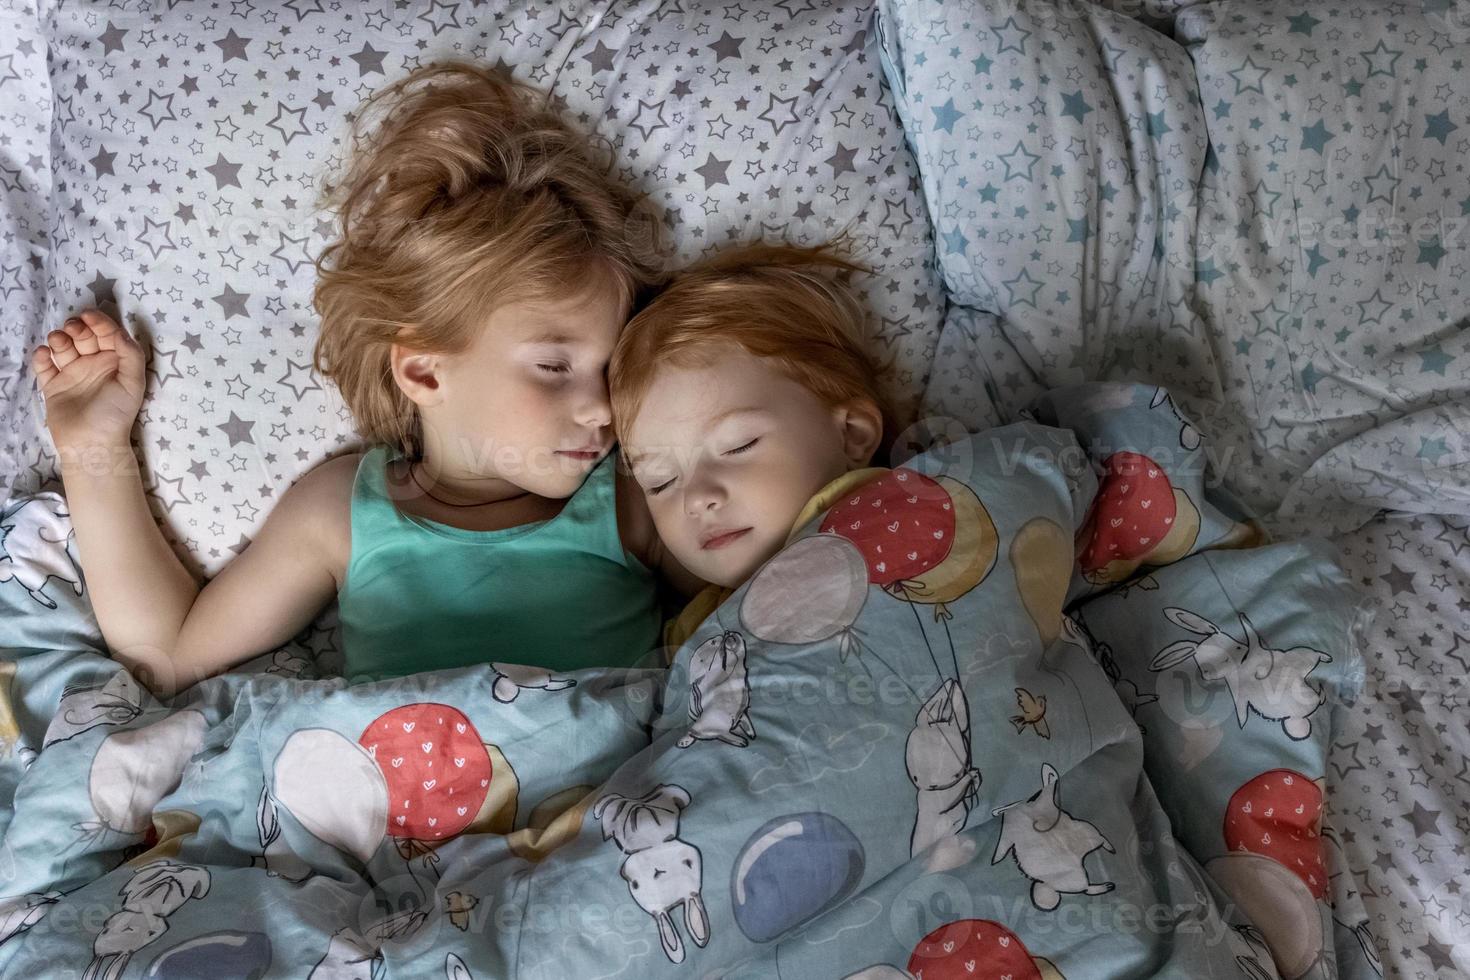 Deux petites sœurs filles sœurs dormant dans une étreinte au lit sous une couverture photo